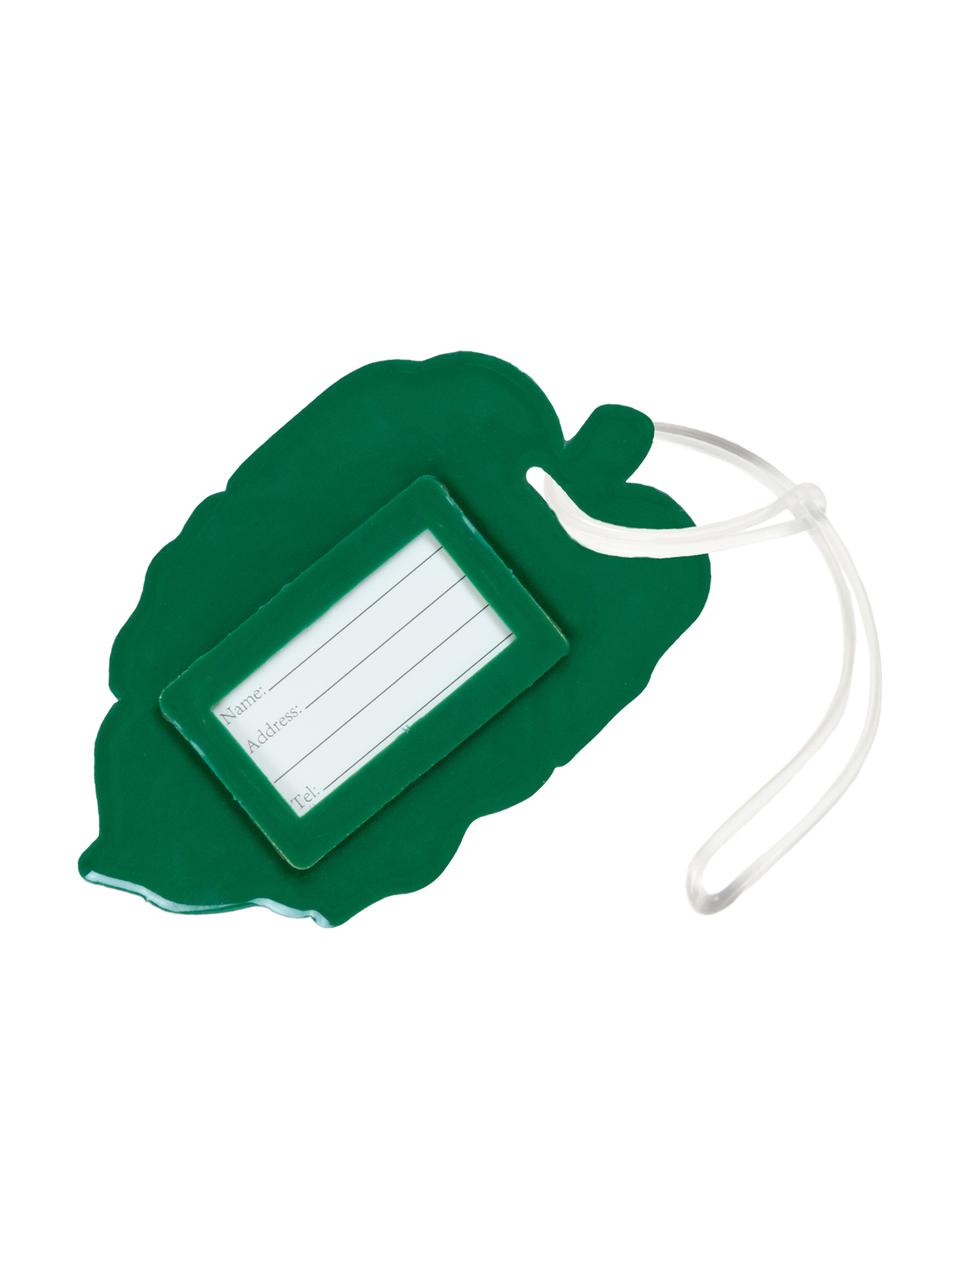 Zawieszka na bagaż Leaf, Tworzywo sztuczne, Zielony, biały, S 10 x W 6 cm